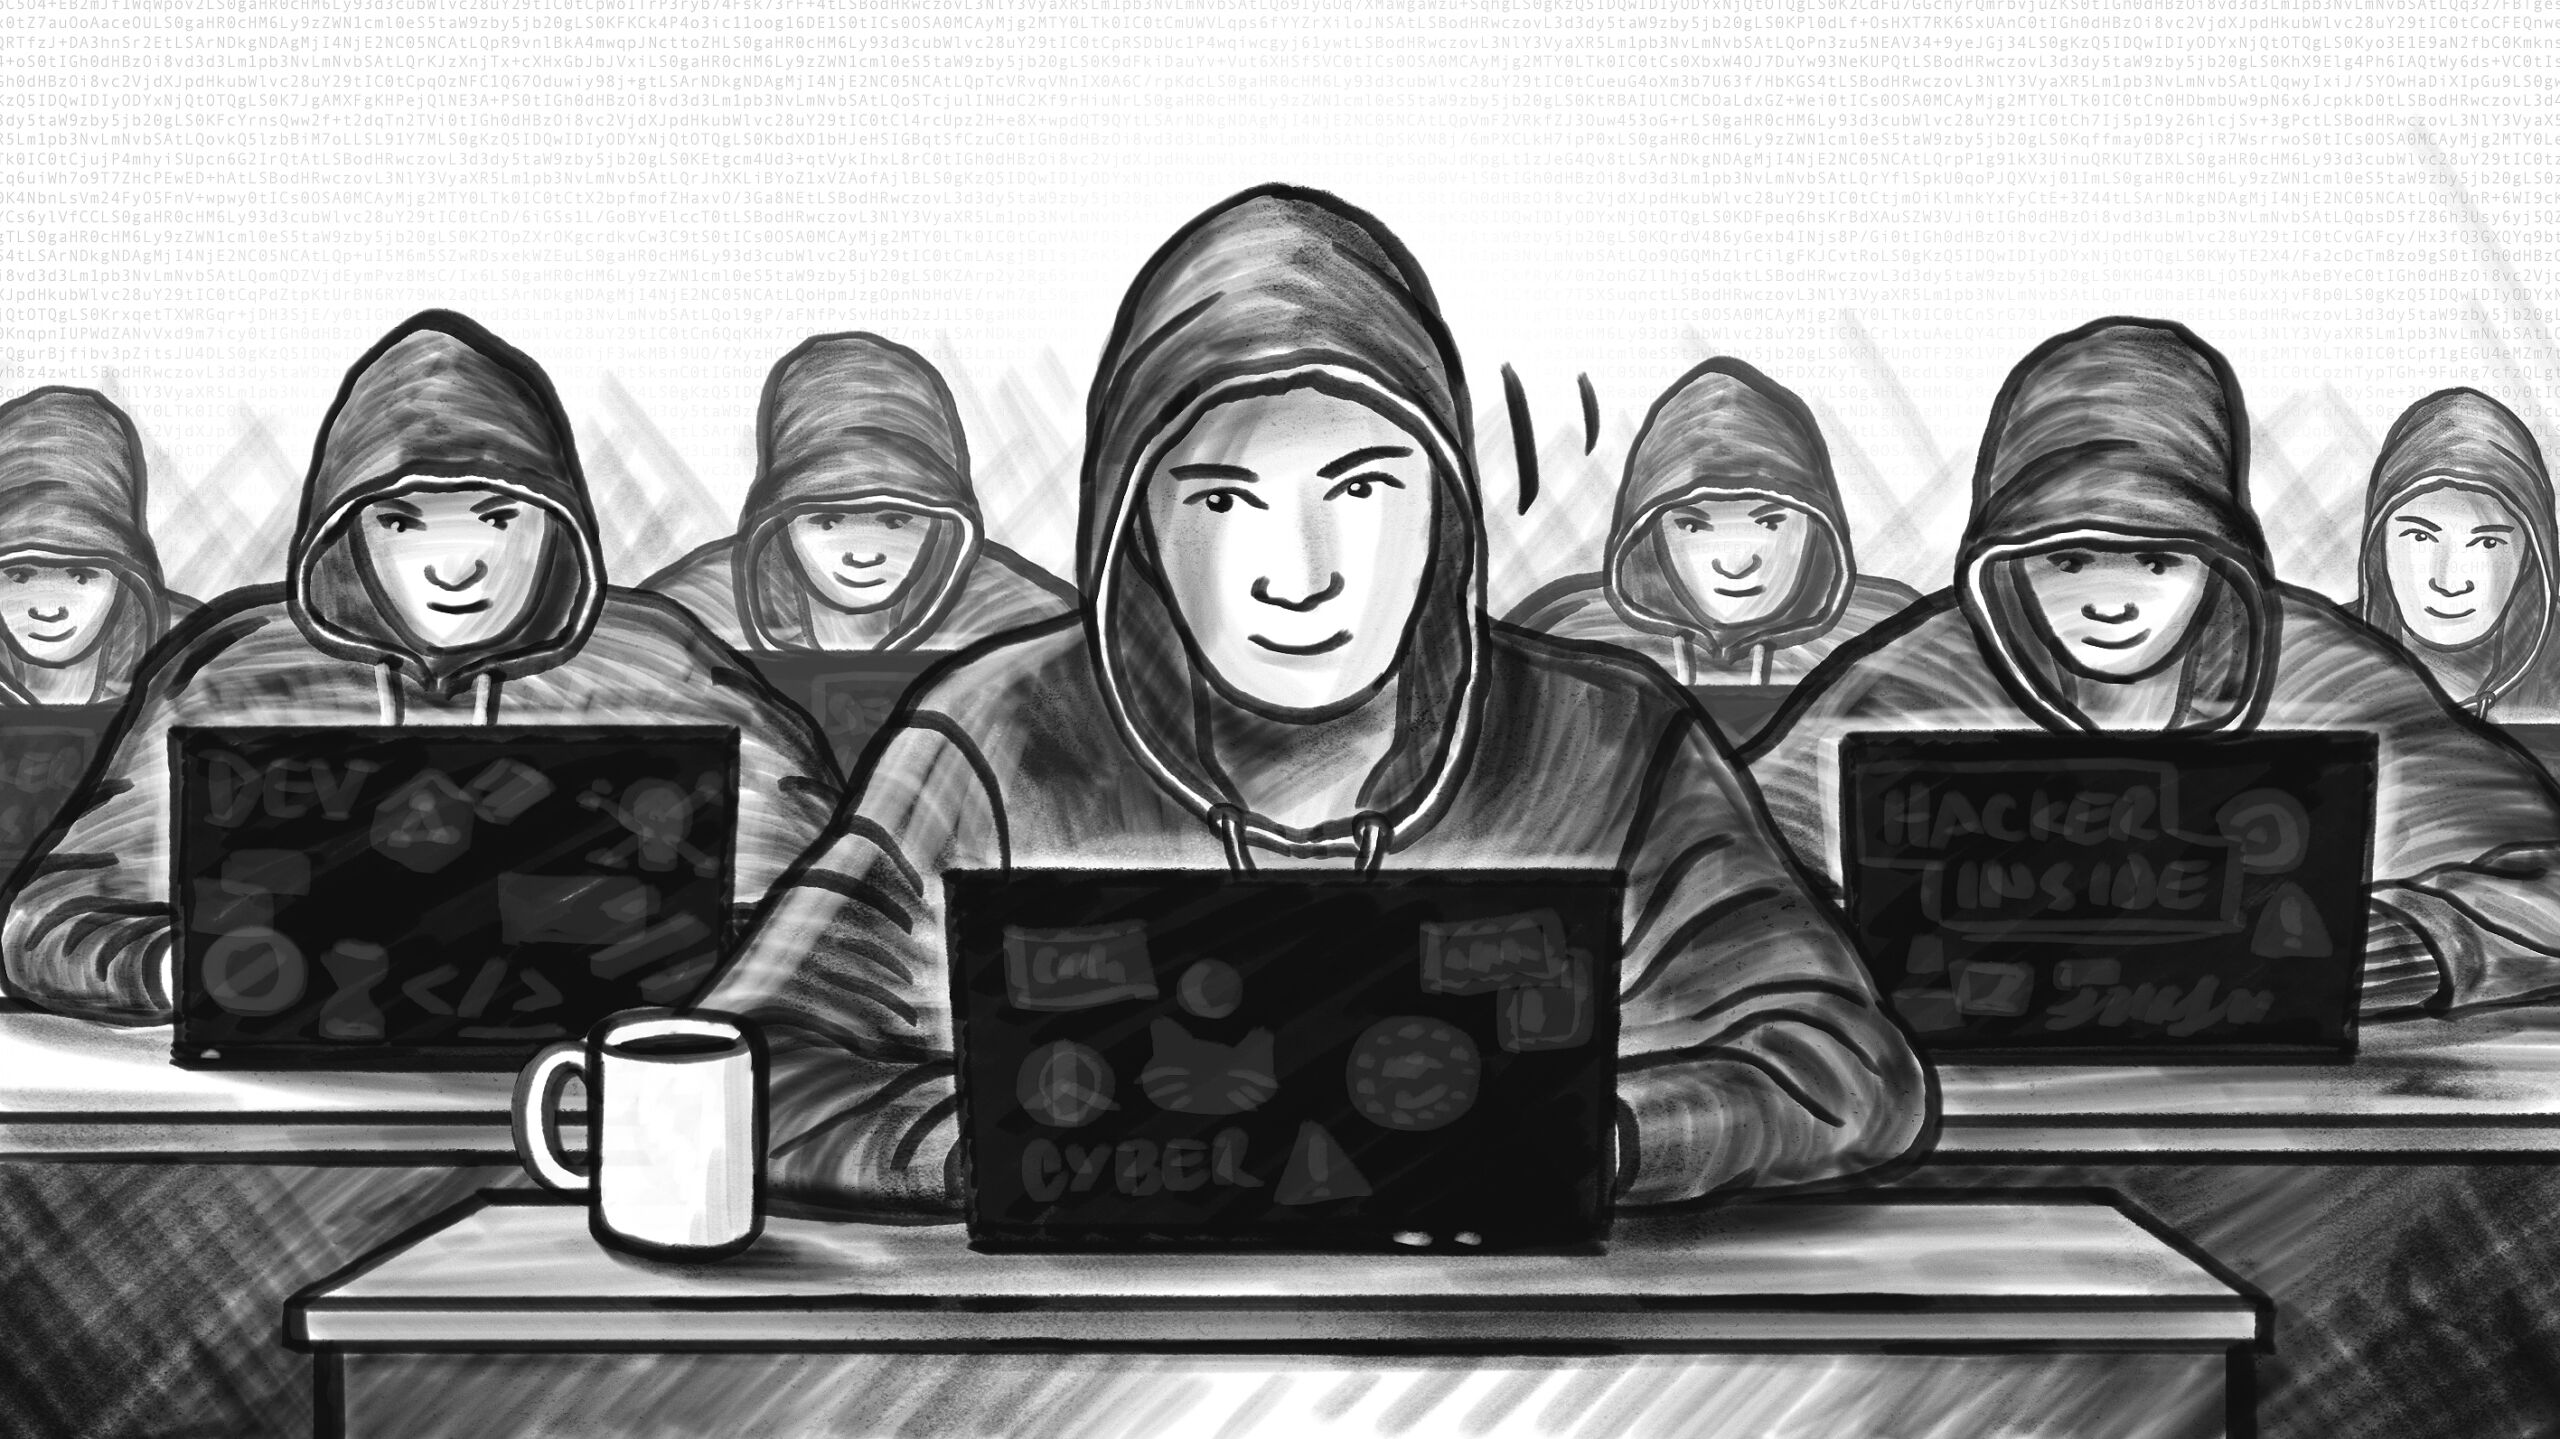 Das Hacker Team eines Pentest-Anbieter